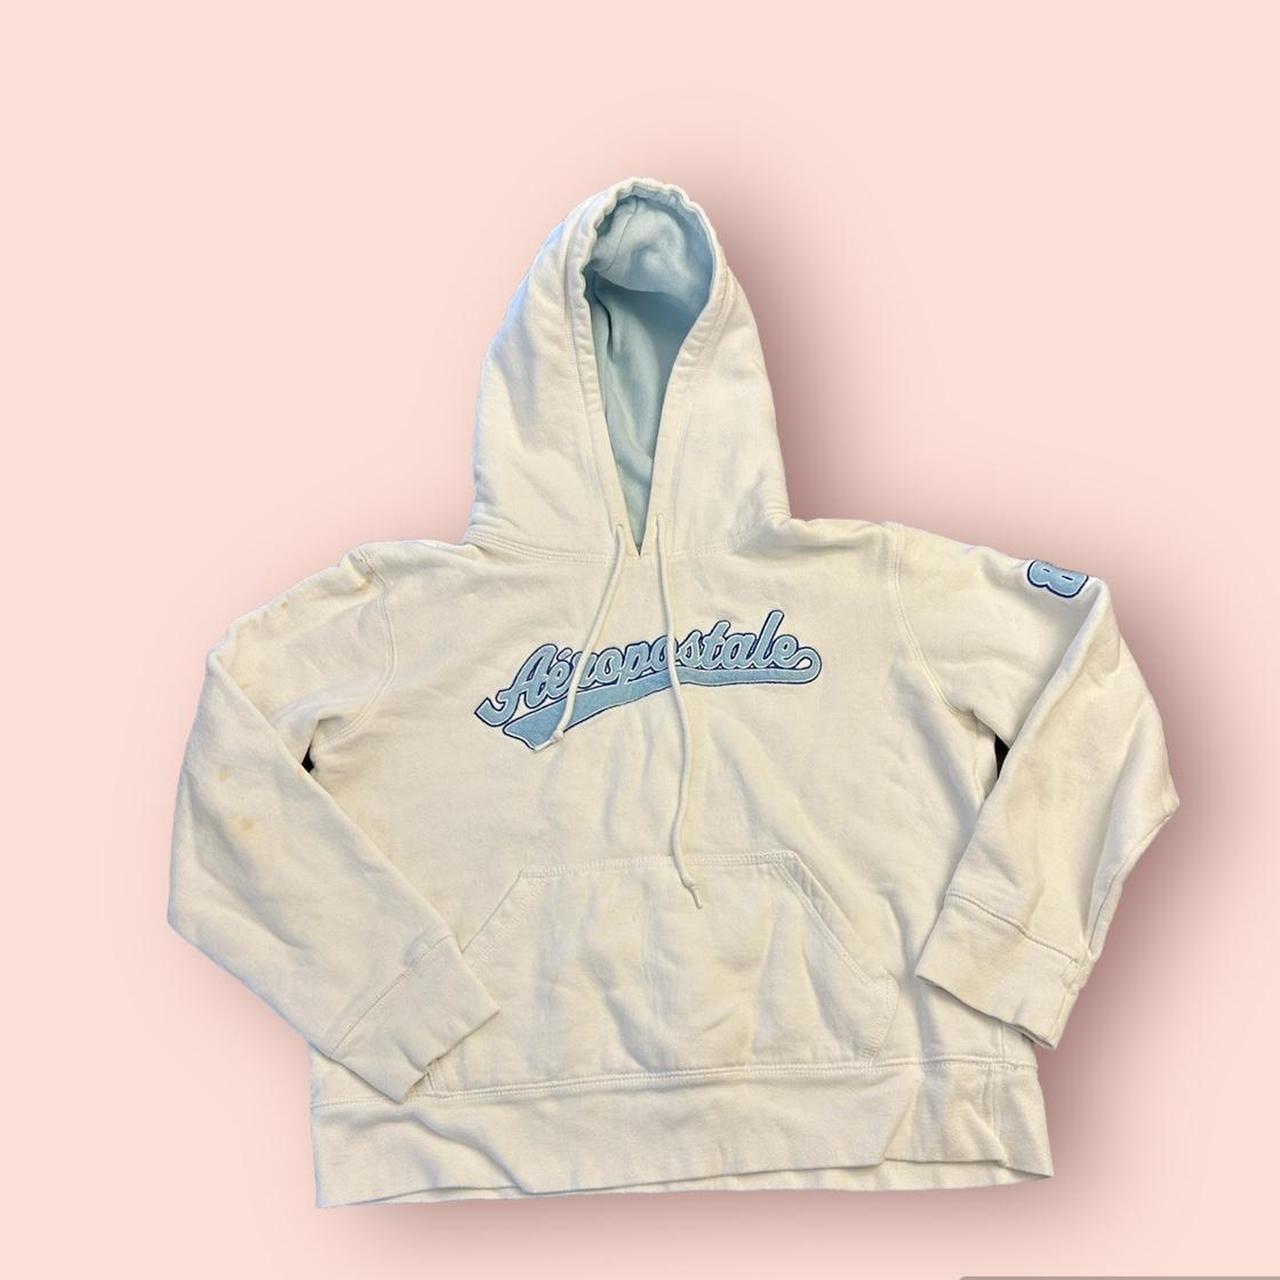 y2k hoodie🩵 super cute Aeropostal hoodie has some... - Depop